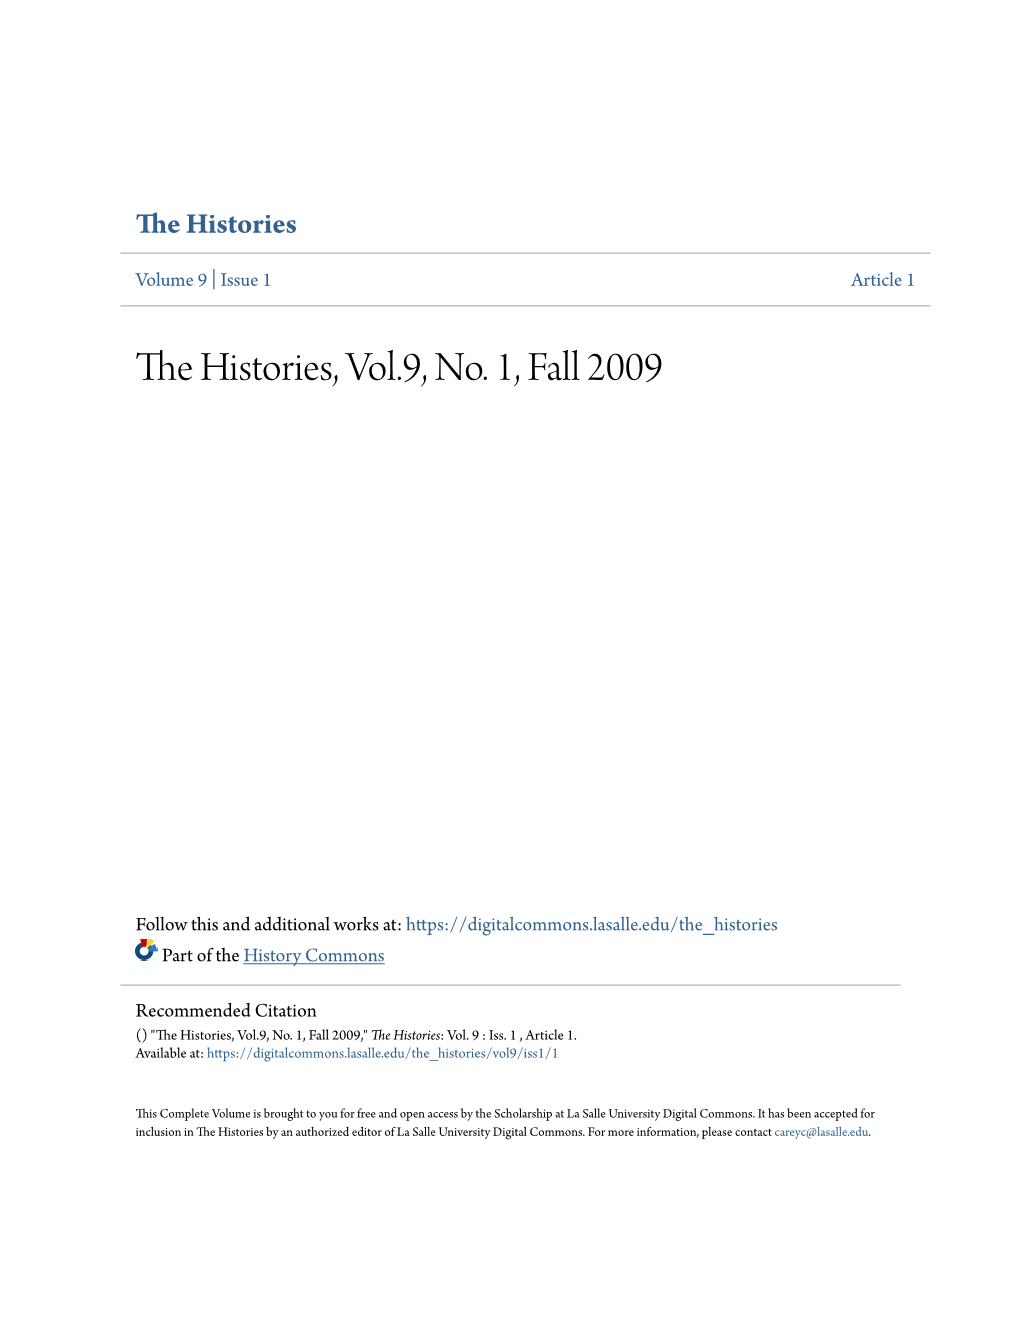 The Histories, Vol.9, No. 1, Fall 2009